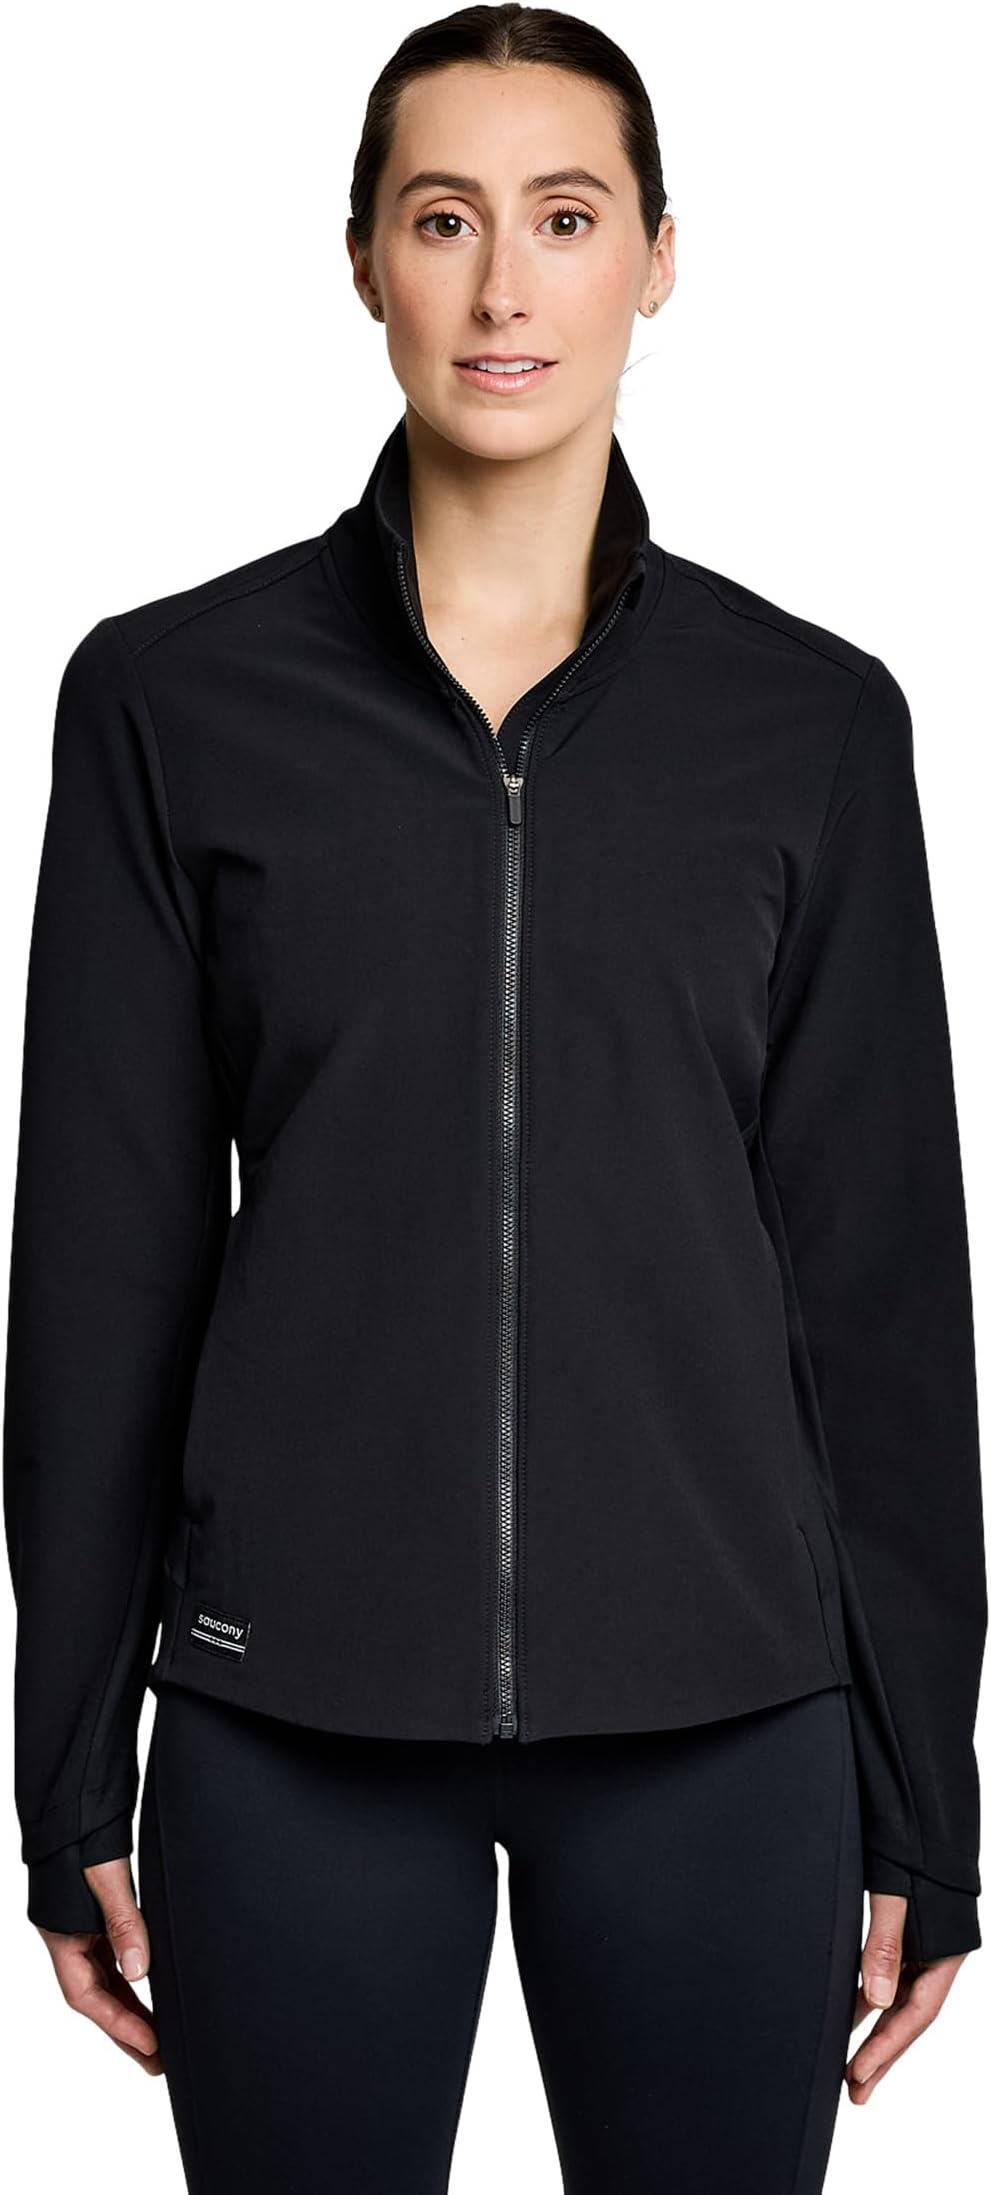 Куртка Triumph Jacket Saucony, черный куртка saucony solstice oysterpuff jacket цвет umbra